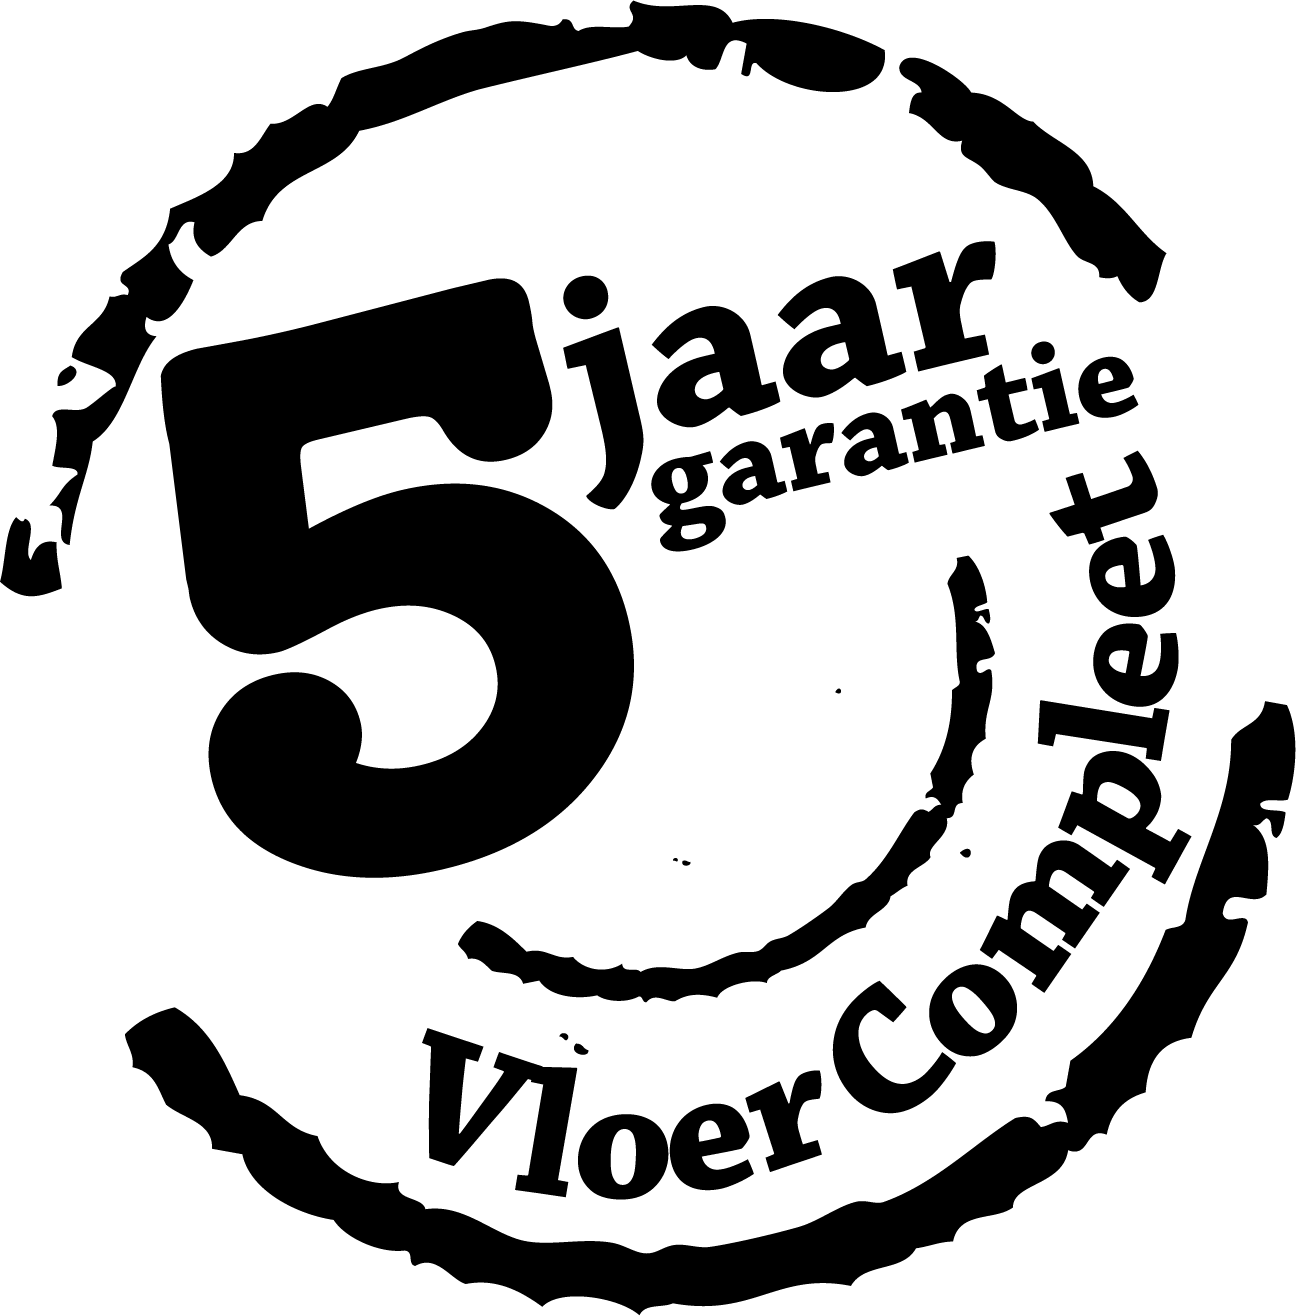 vloer compleet stempel logo (zwart wit).png